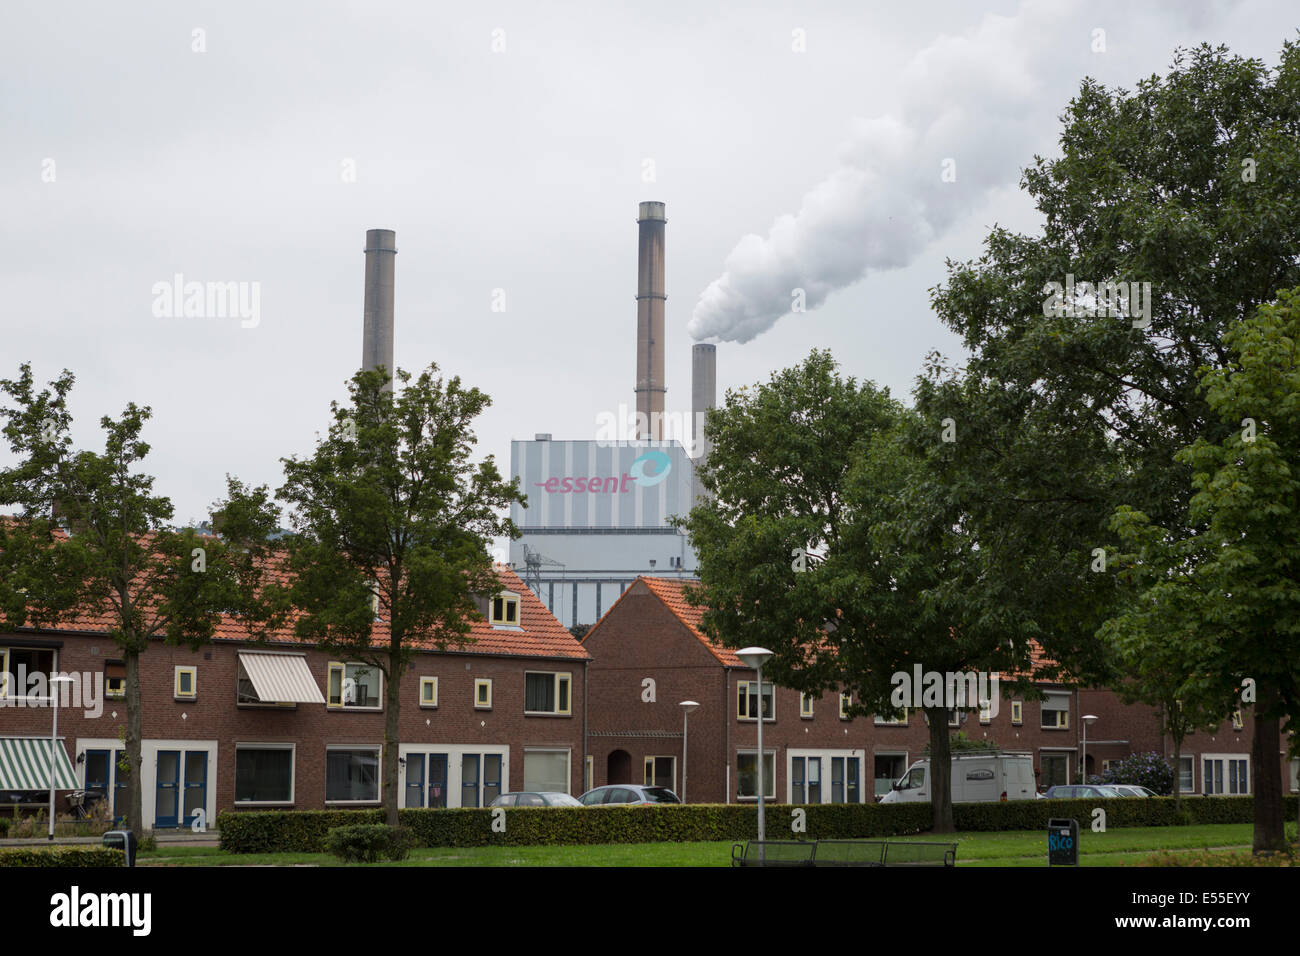 Amercentrale detrás de una zona residencial de casas, central eléctrica de carbón estación propiedad de Essent en los Países Bajos Foto de stock